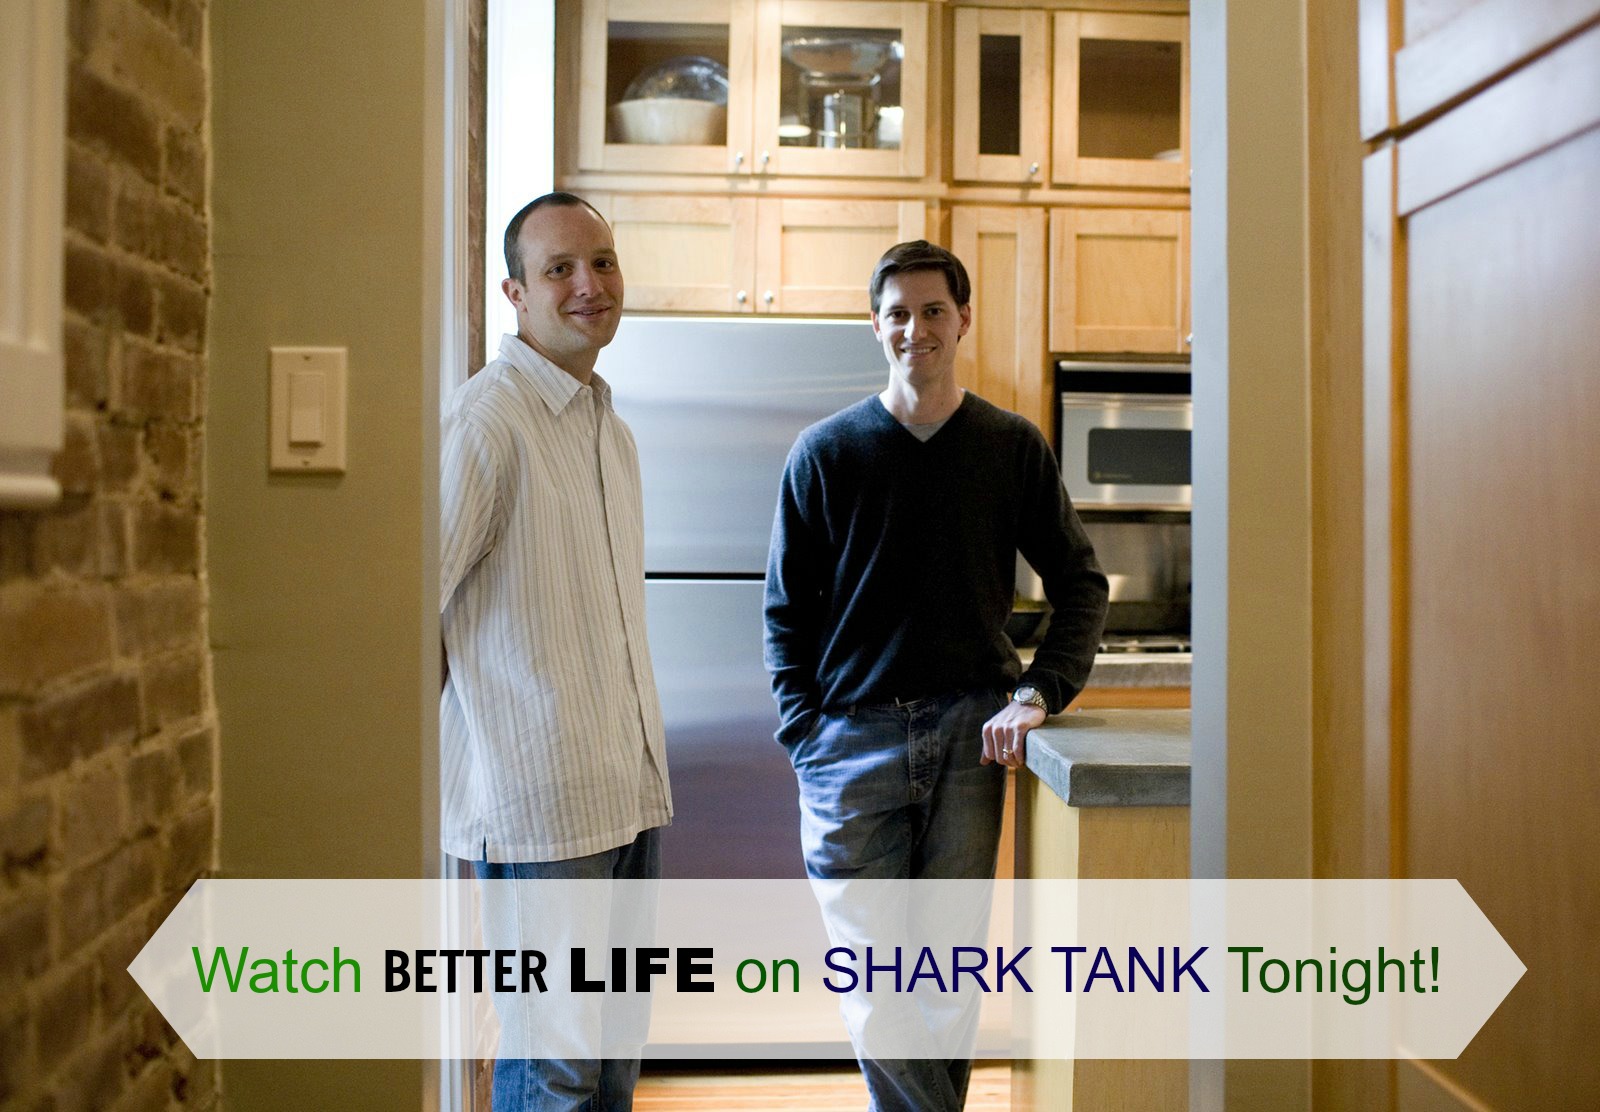 Watch Better Life on Shark Tank TONIGHT!